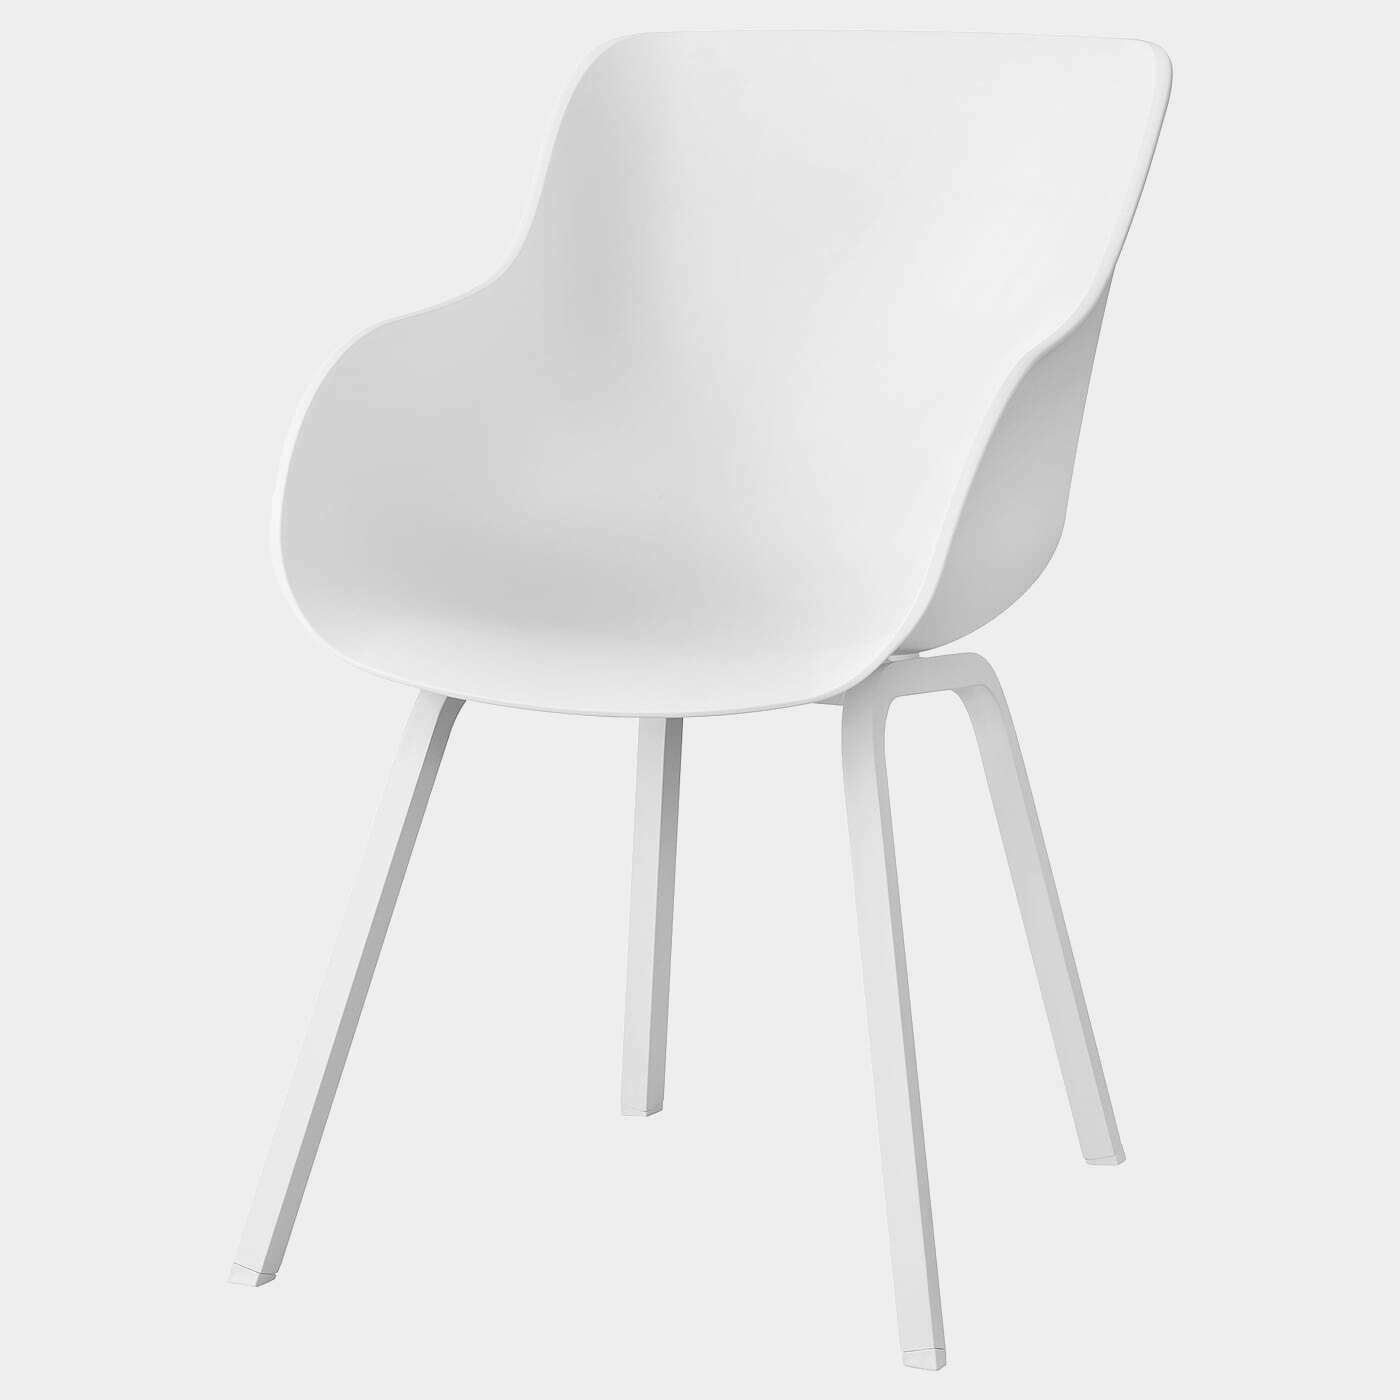 TORVID Stuhl  -  - Möbel Ideen für dein Zuhause von Home Trends. Möbel Trends von Social Media Influencer für dein Skandi Zuhause.